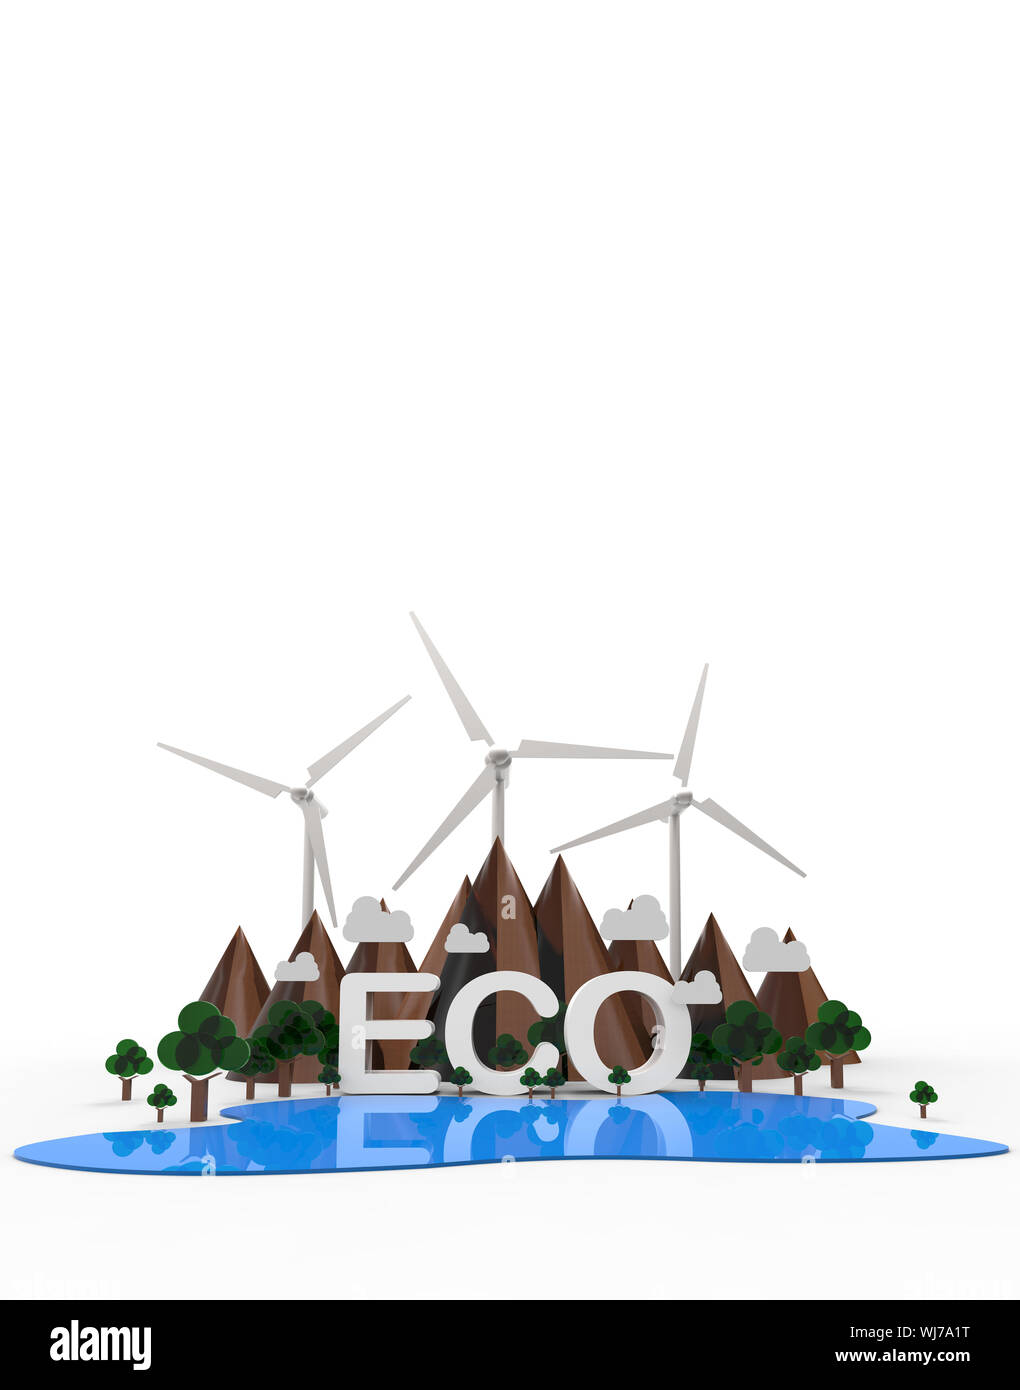 ECO Nature landscape. Mountain, turbine, tree. Renewable energy isolated on white background. 3D illustration. Stock Photo